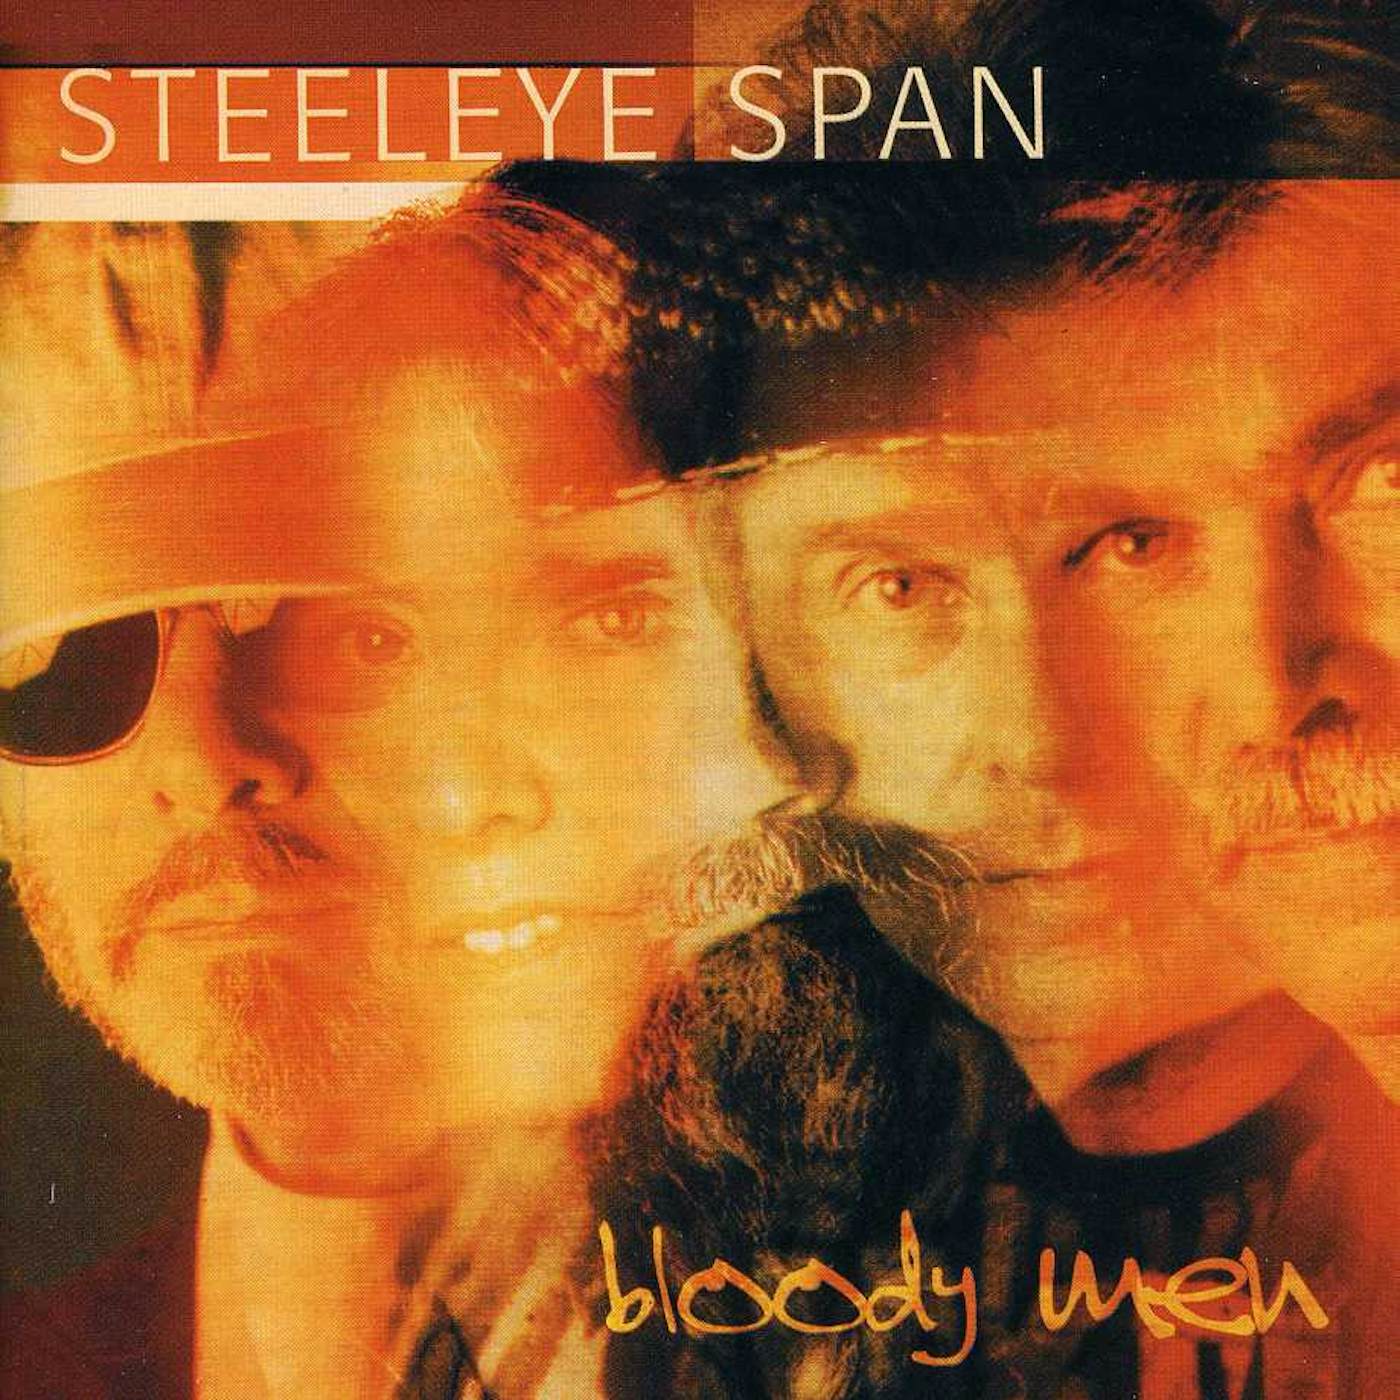 Steeleye Span BLOODY MEN CD